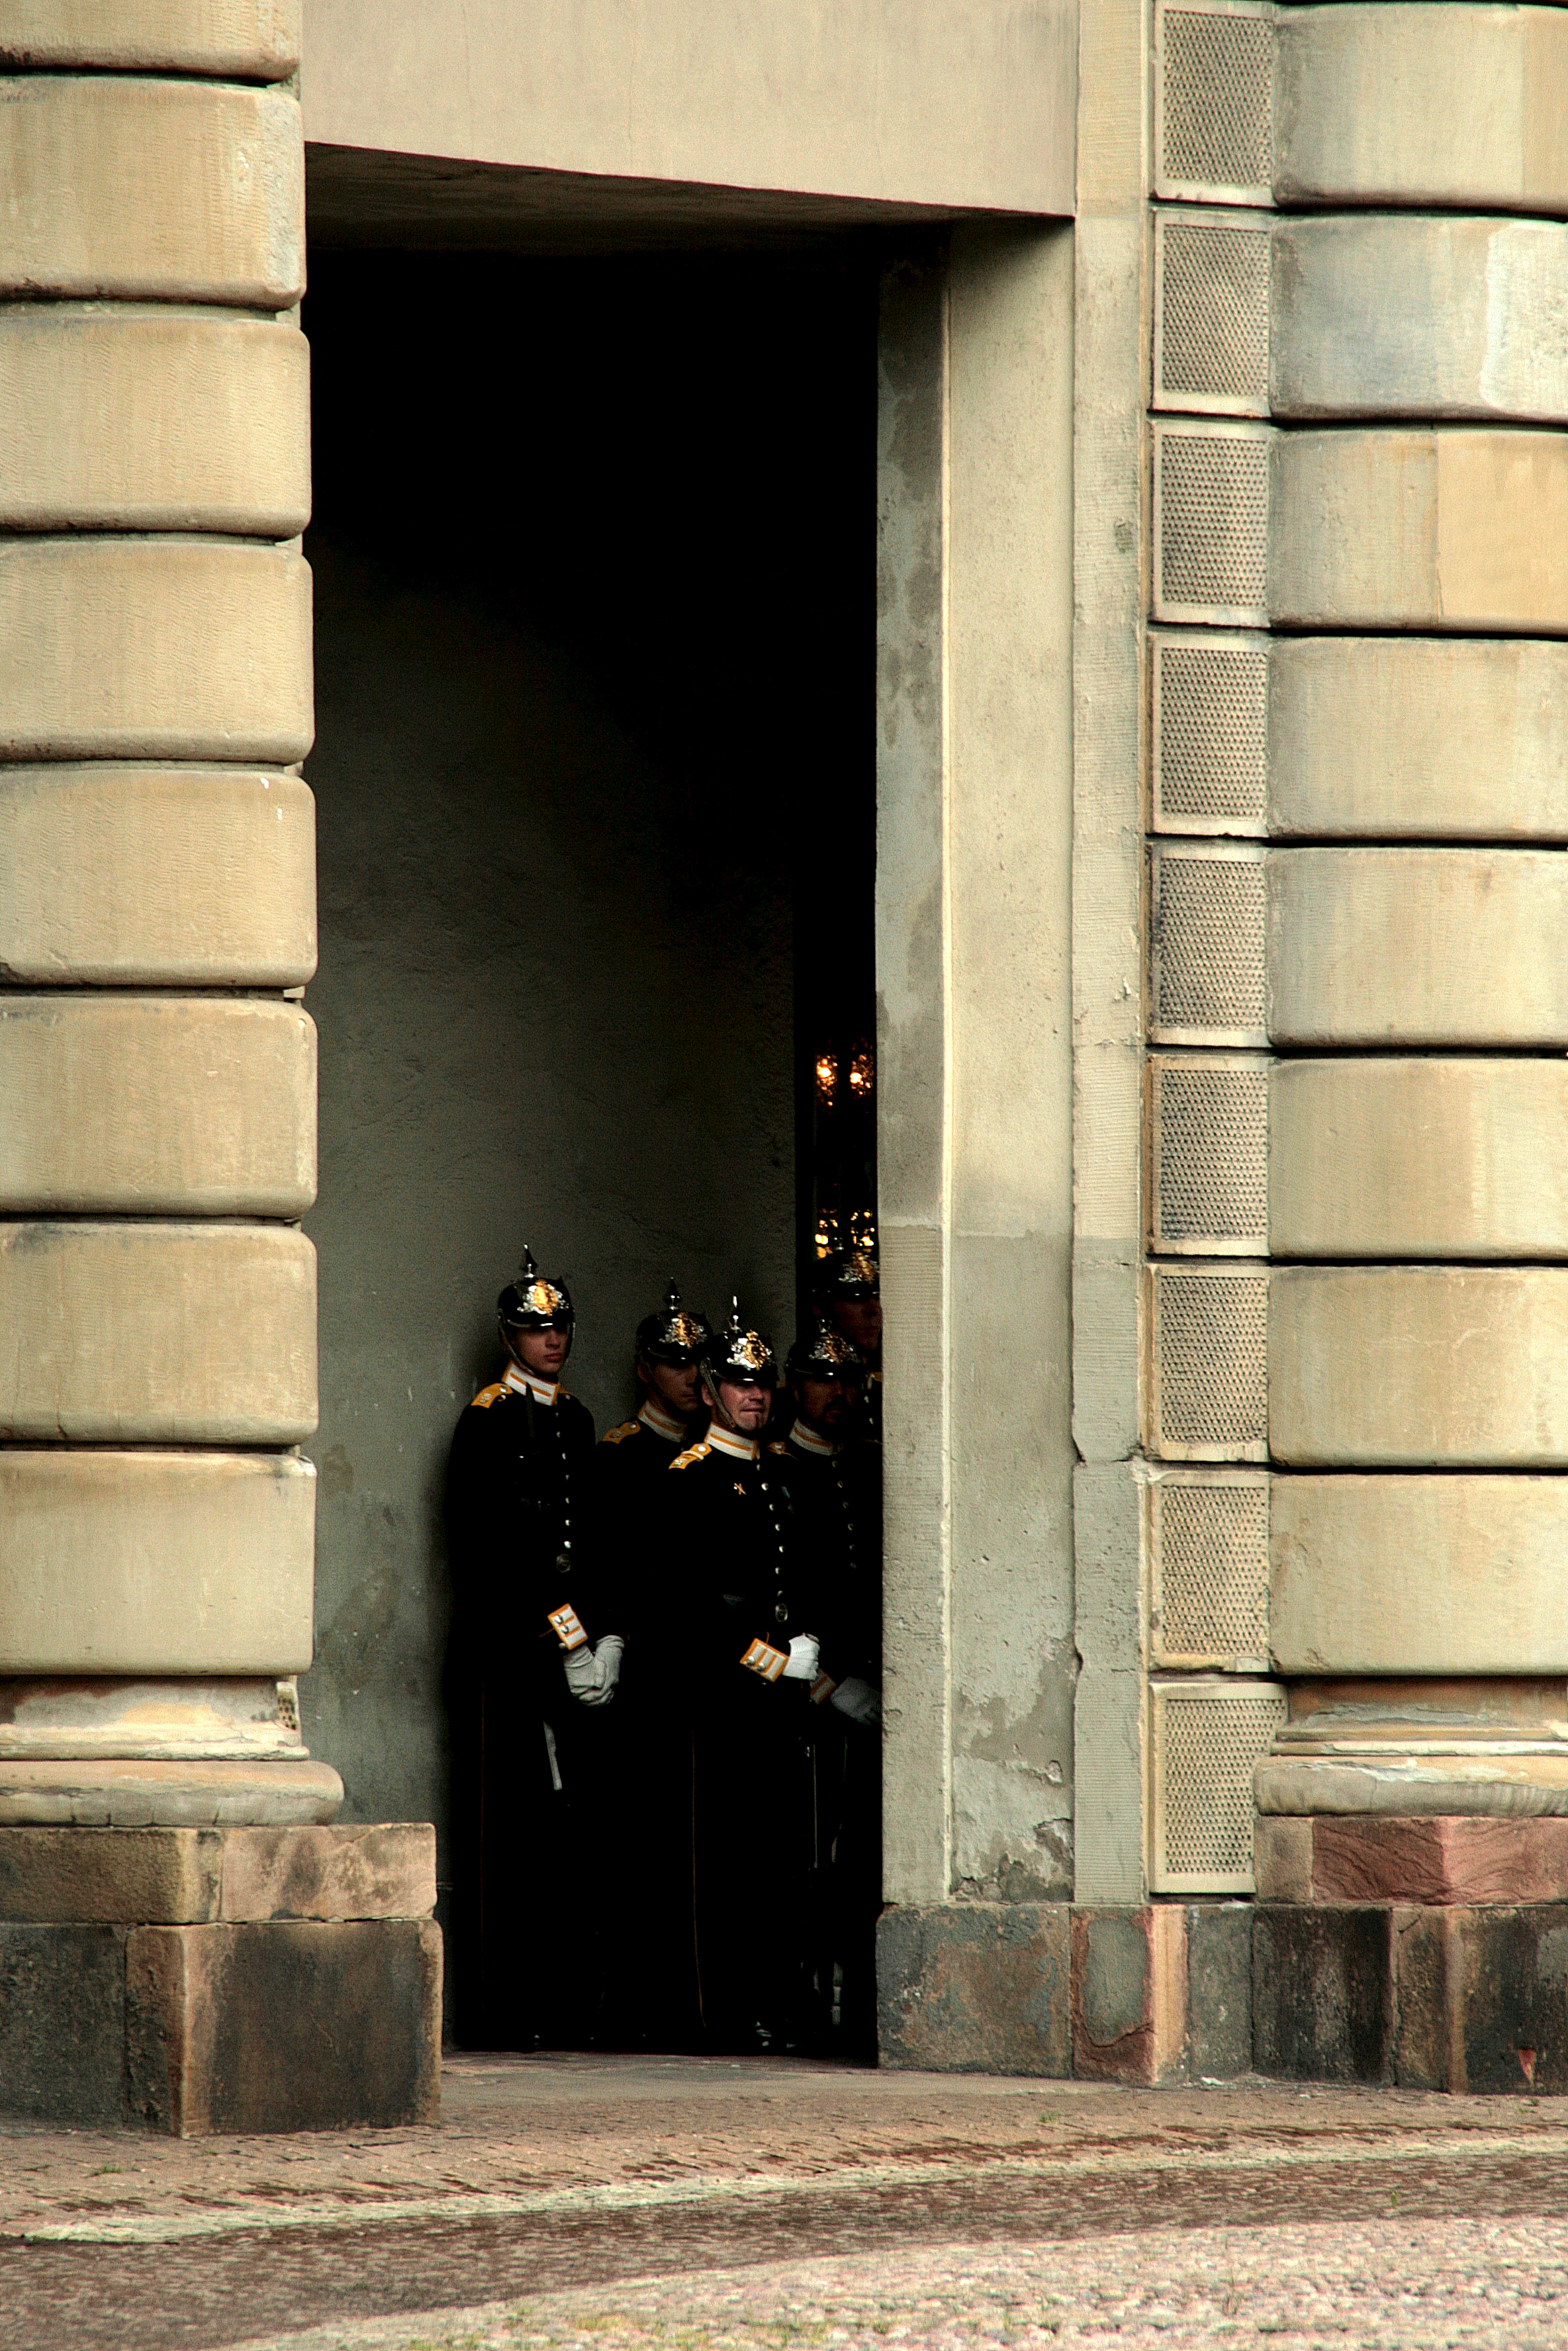 Royal Palace, Stockholm, Sweden, 2012